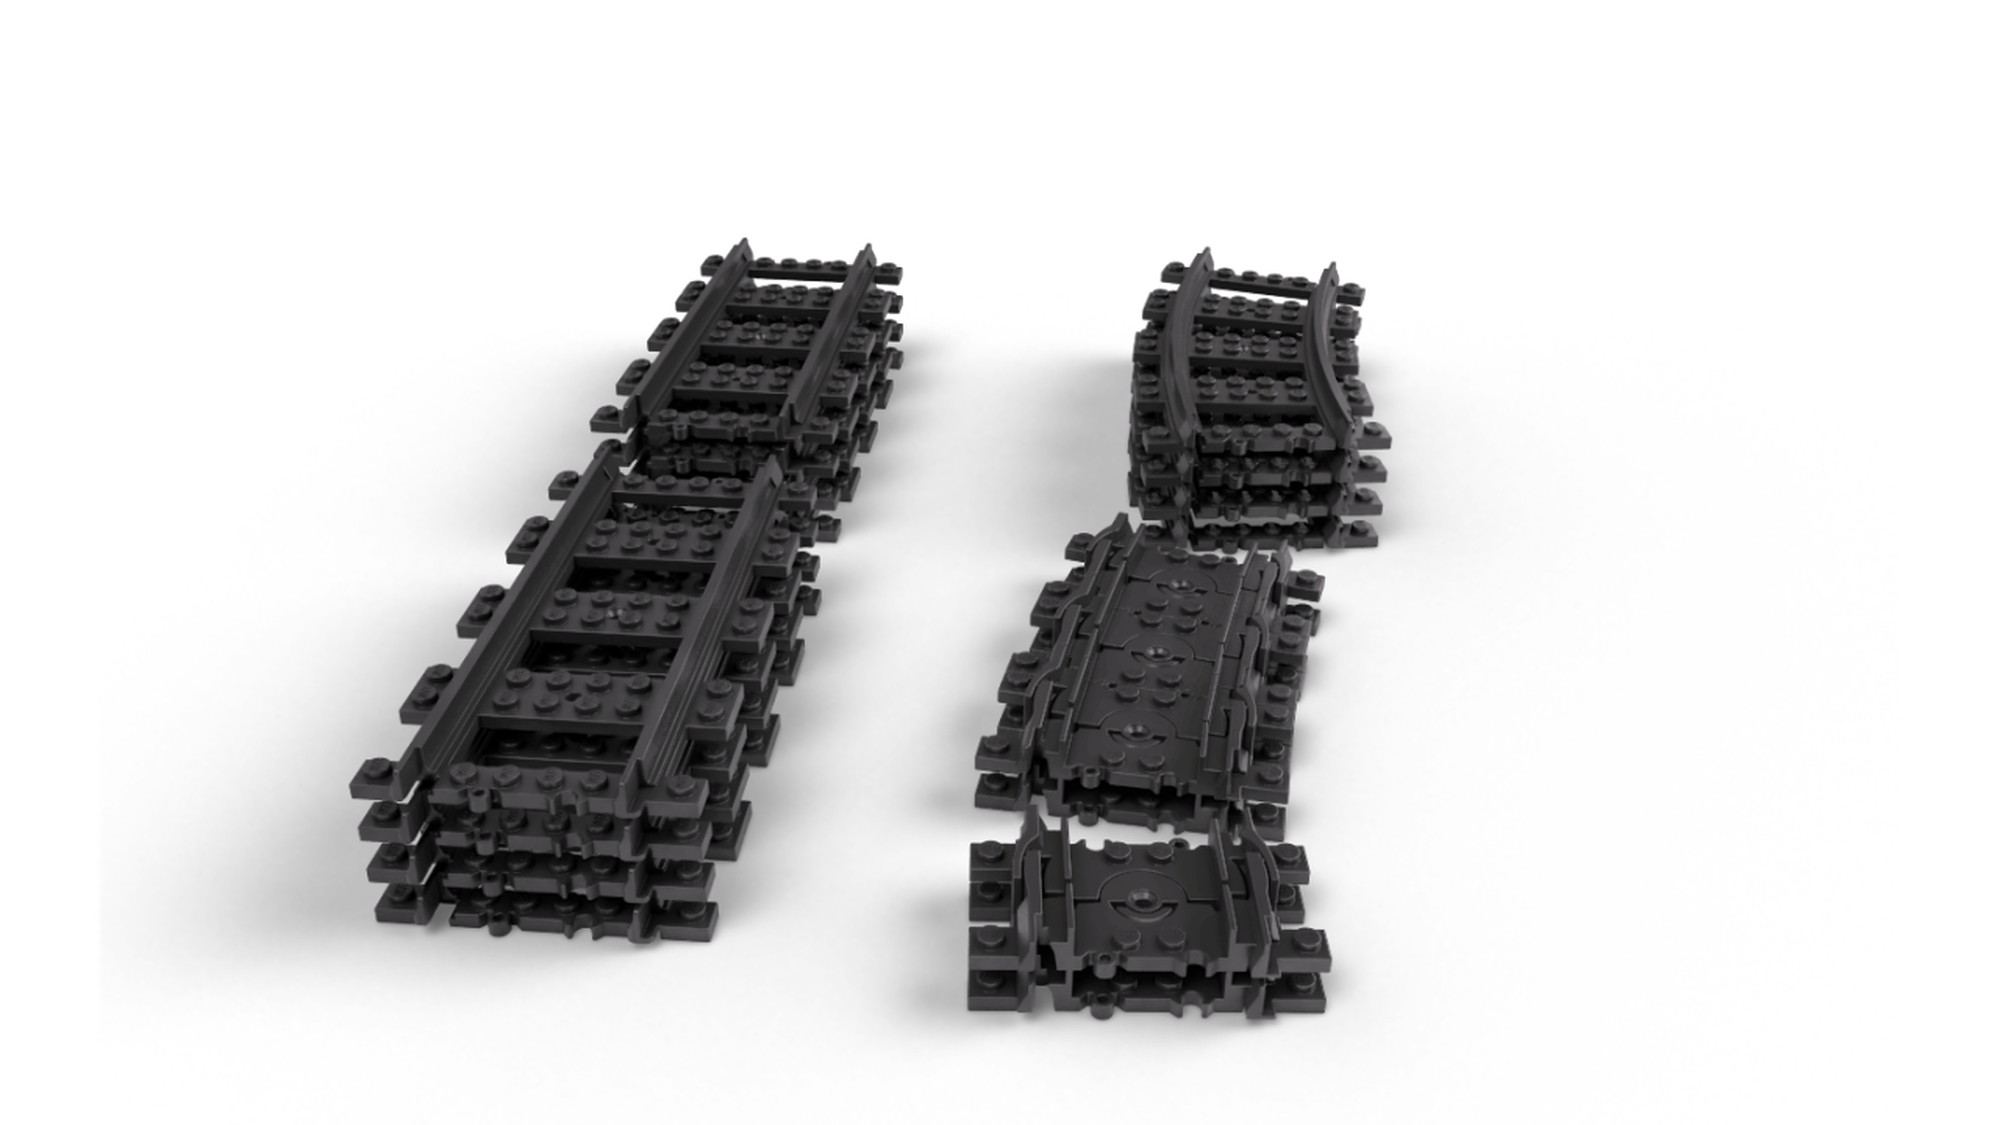 LEGO® City Trains 60205 Pack de rails - Lego - Achat & prix